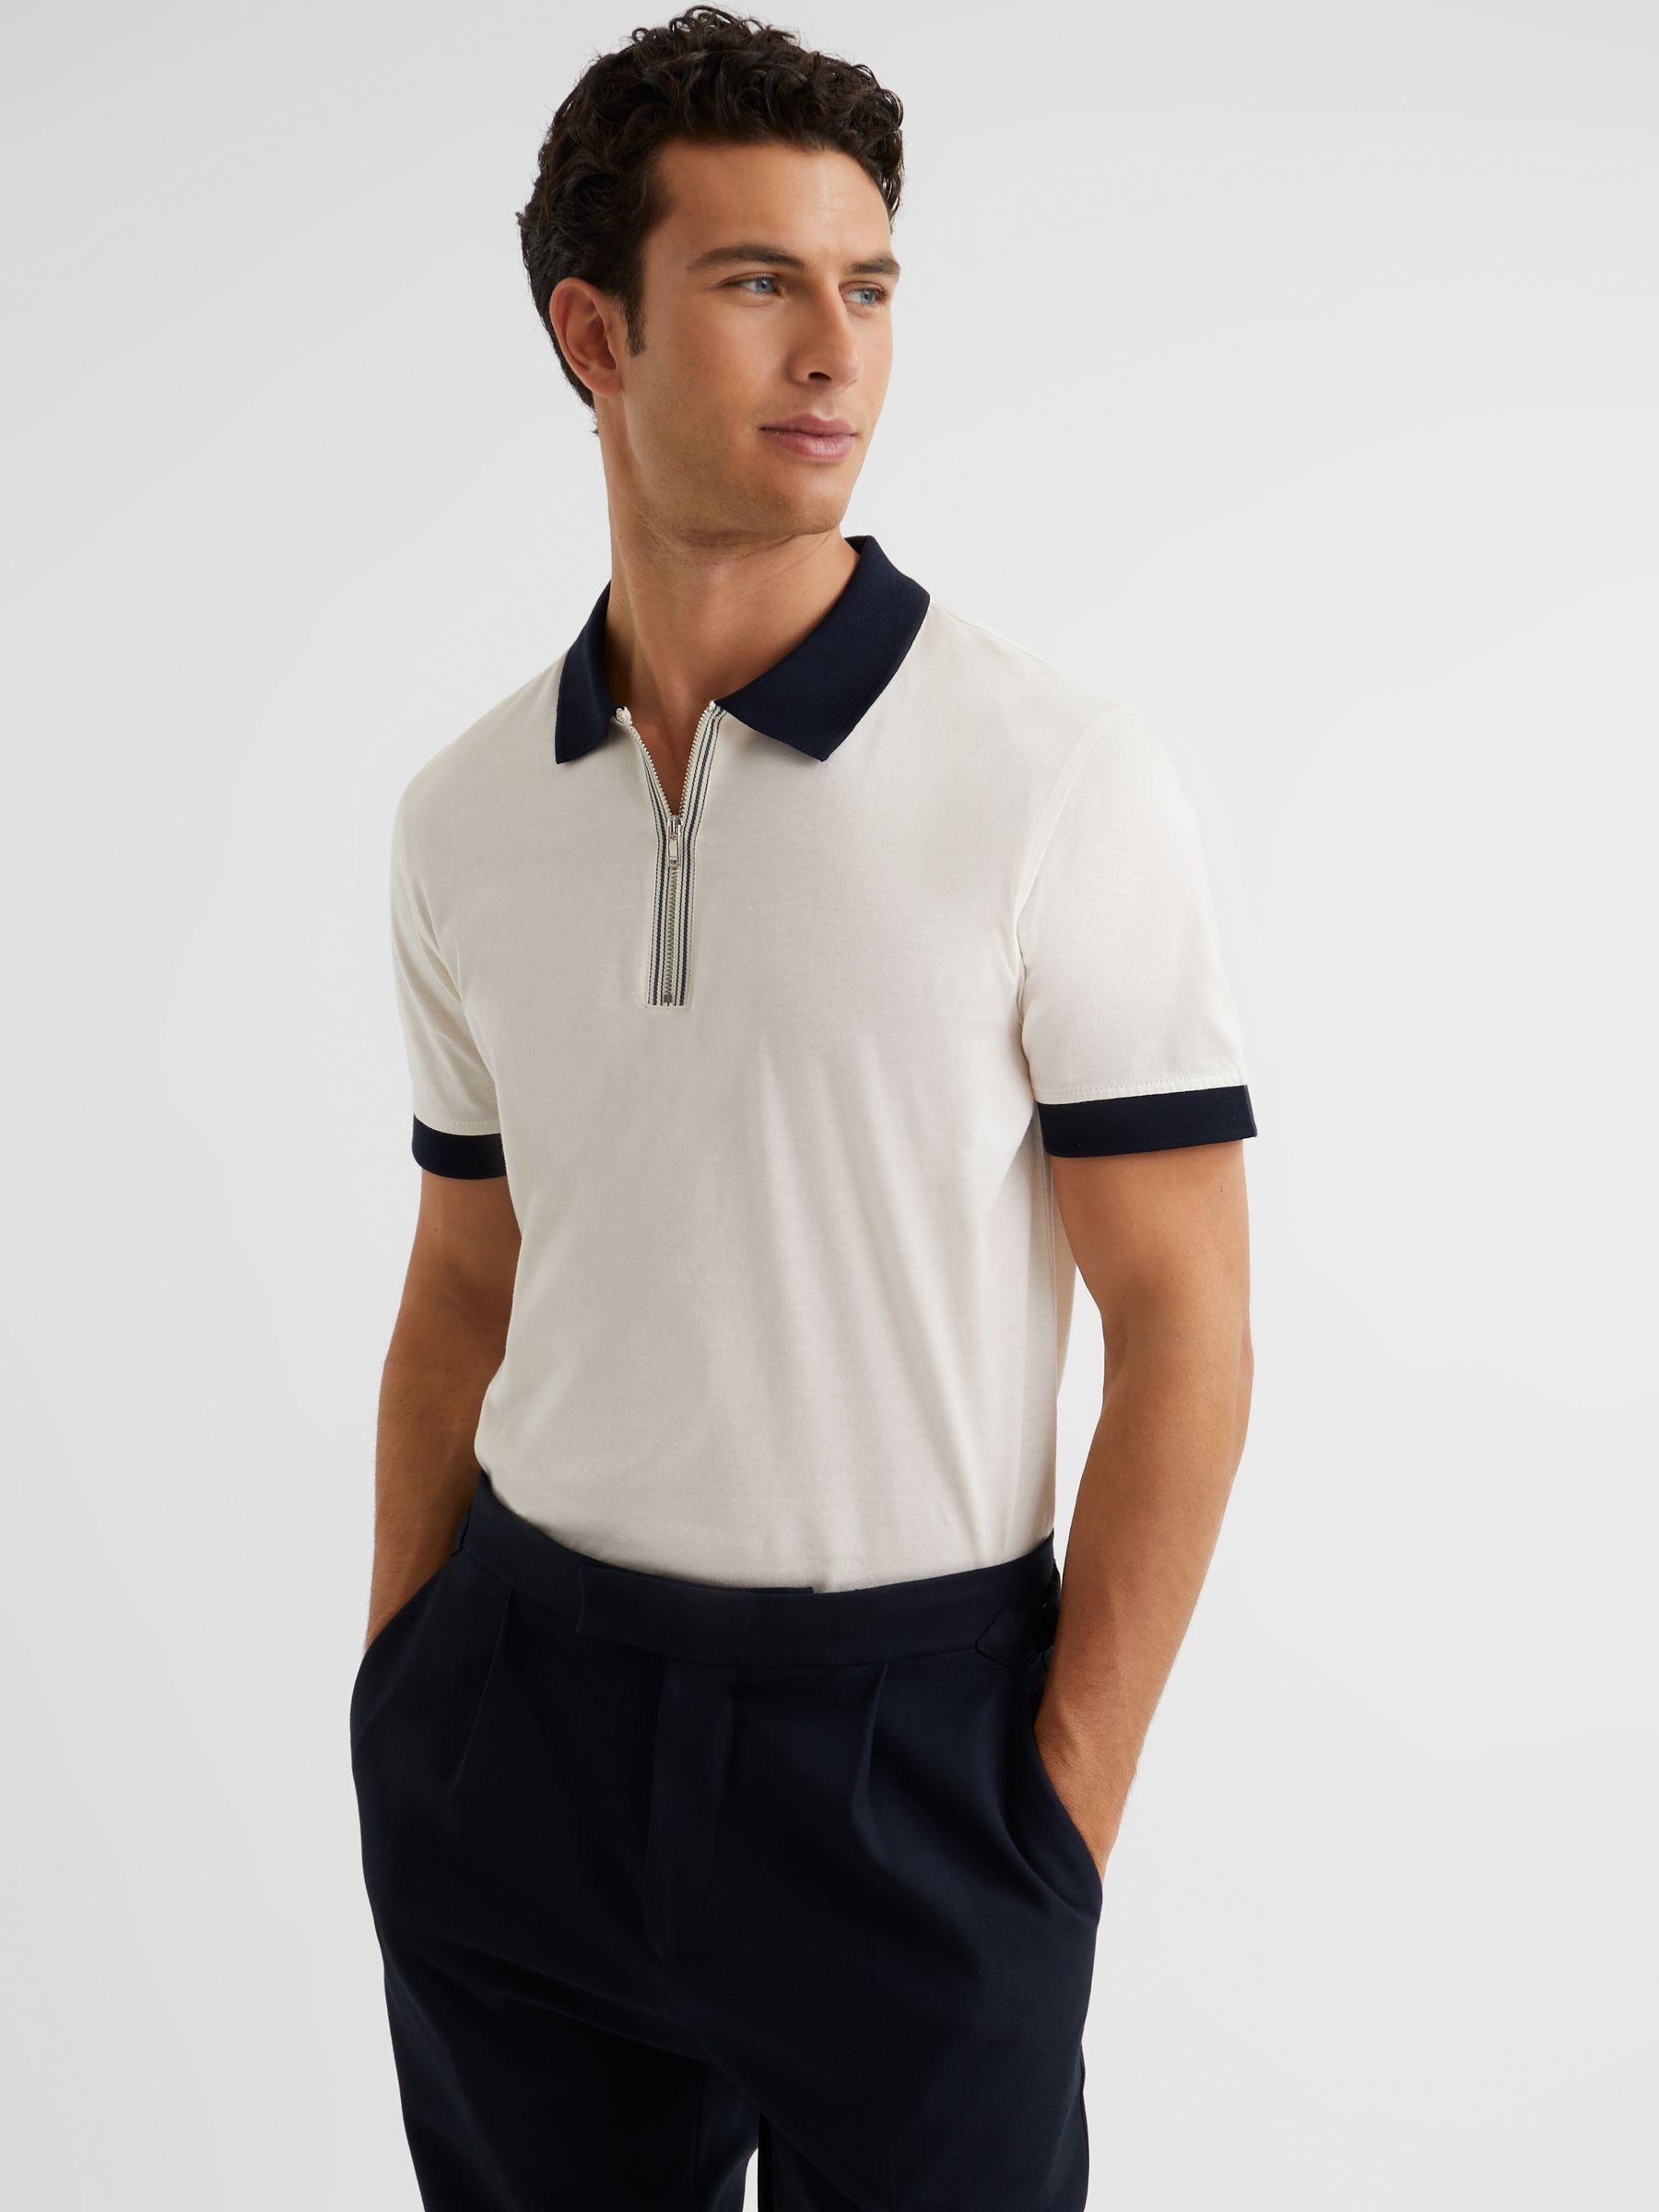 Mercerised Zip Neck Polo T-Shirt in White/Navy - REISS